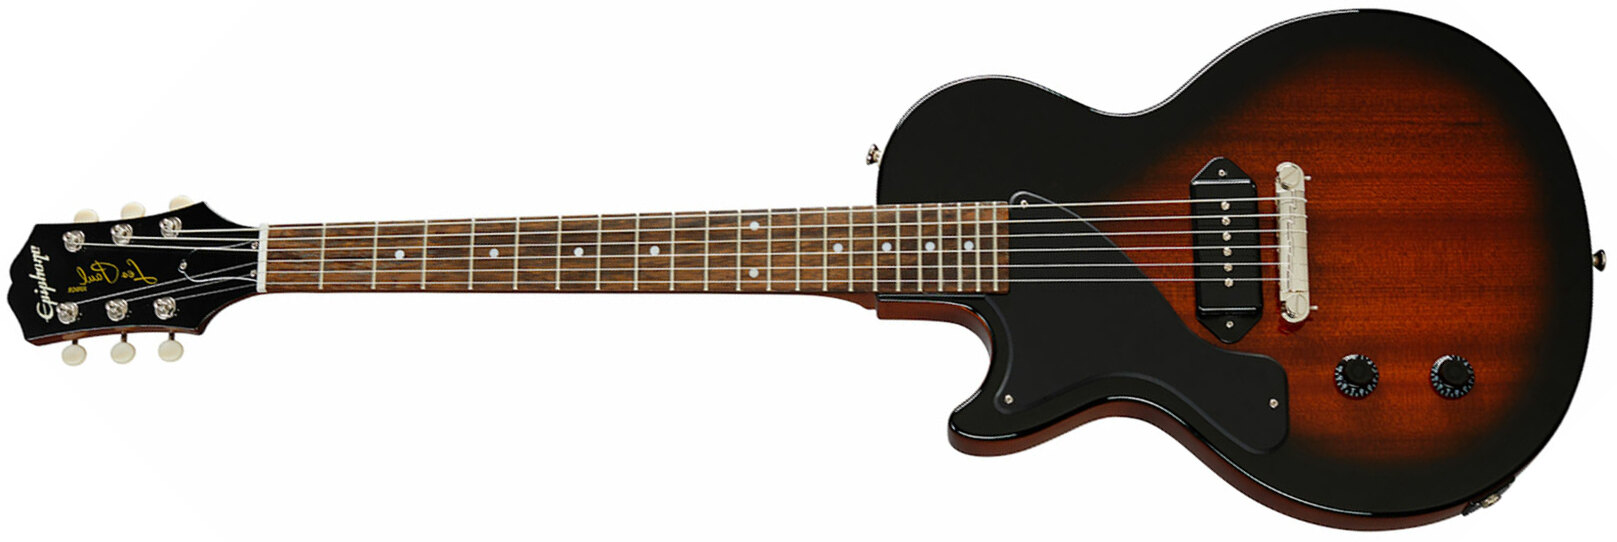 Epiphone Les Paul Junior Lh Gaucher 1s P90 Ht Rw - Vintage Sunburst - E-Gitarre für Linkshänder - Main picture